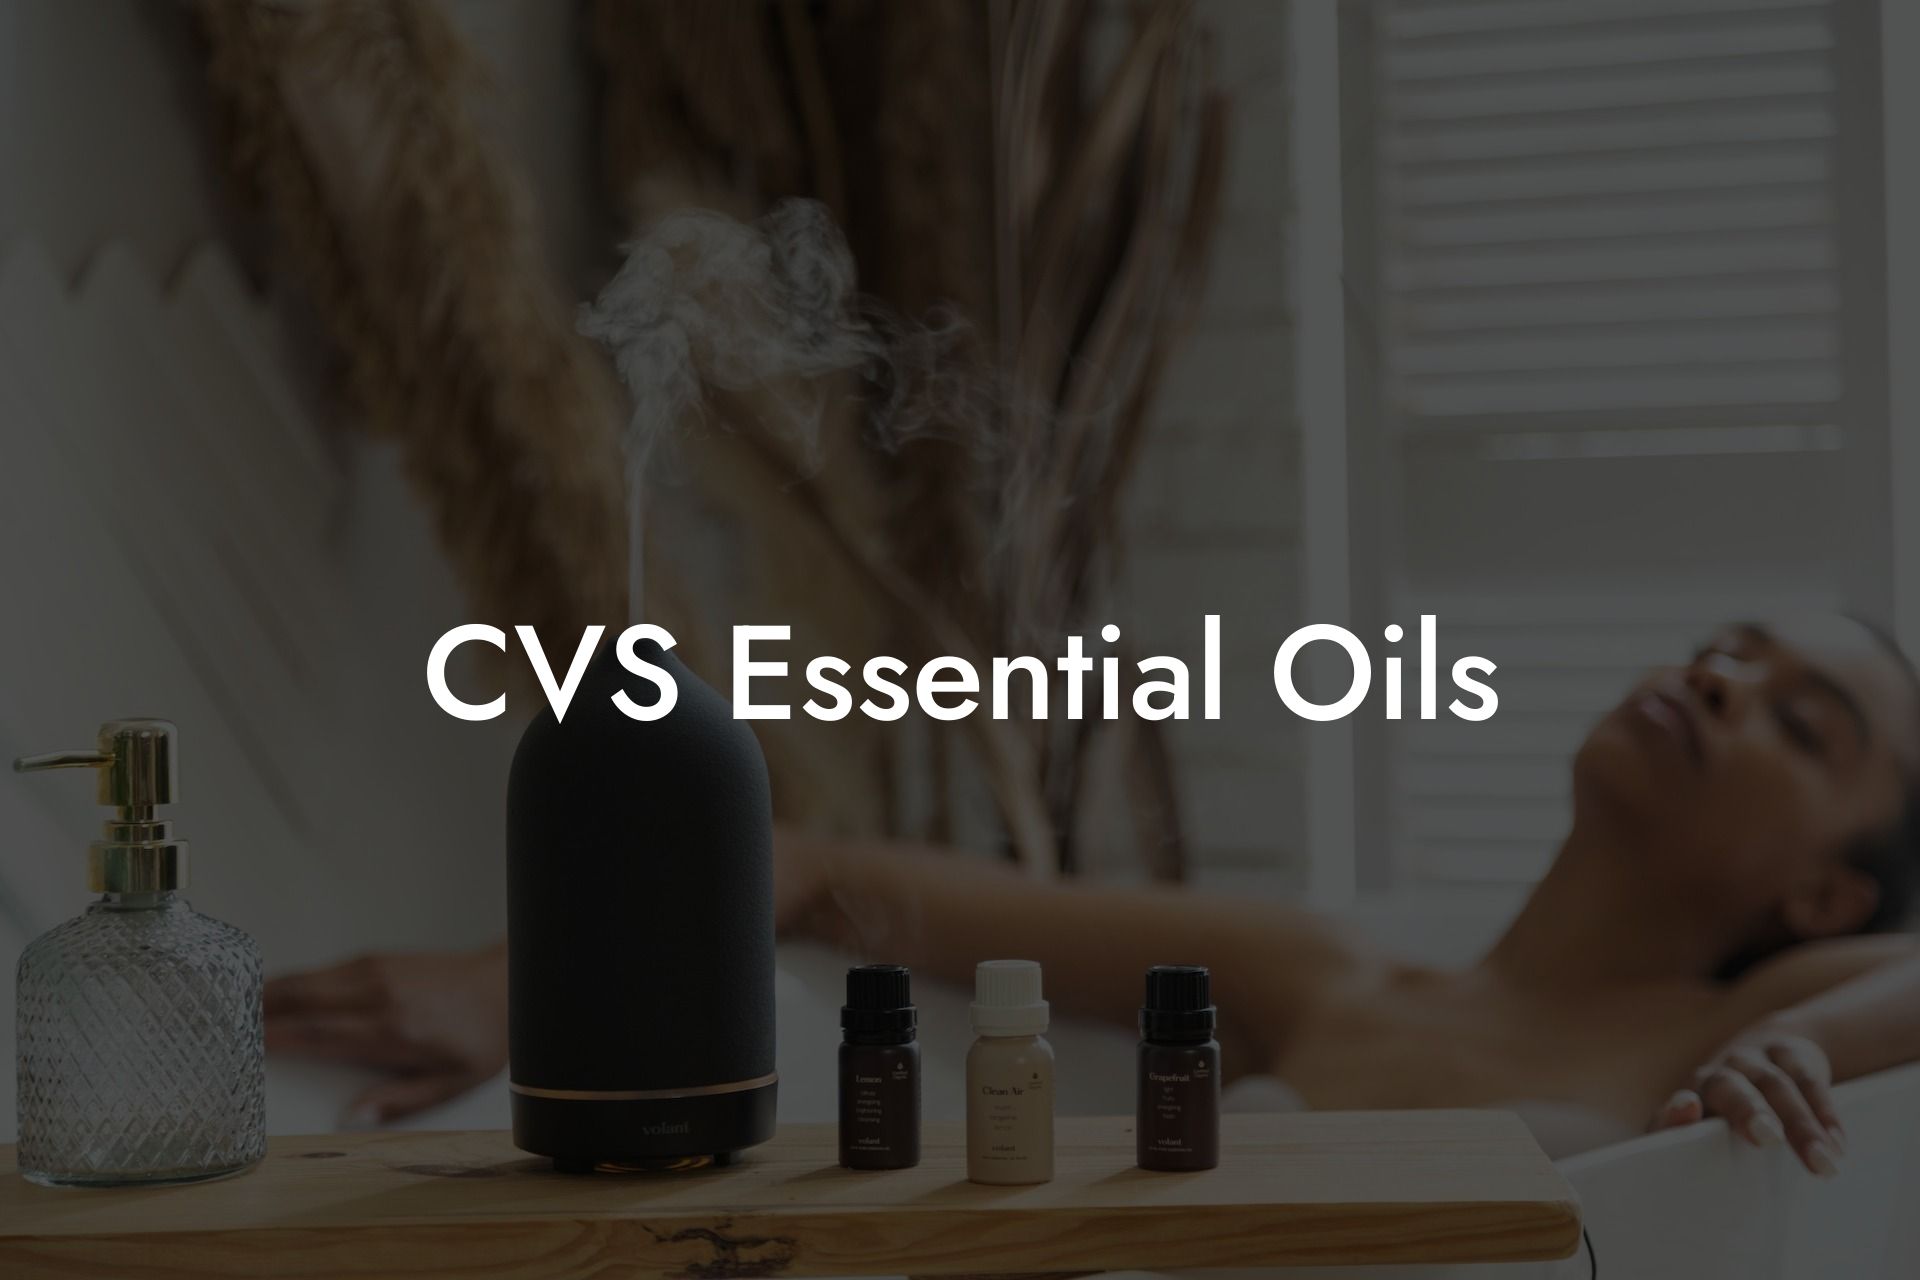 CVS Essential Oils